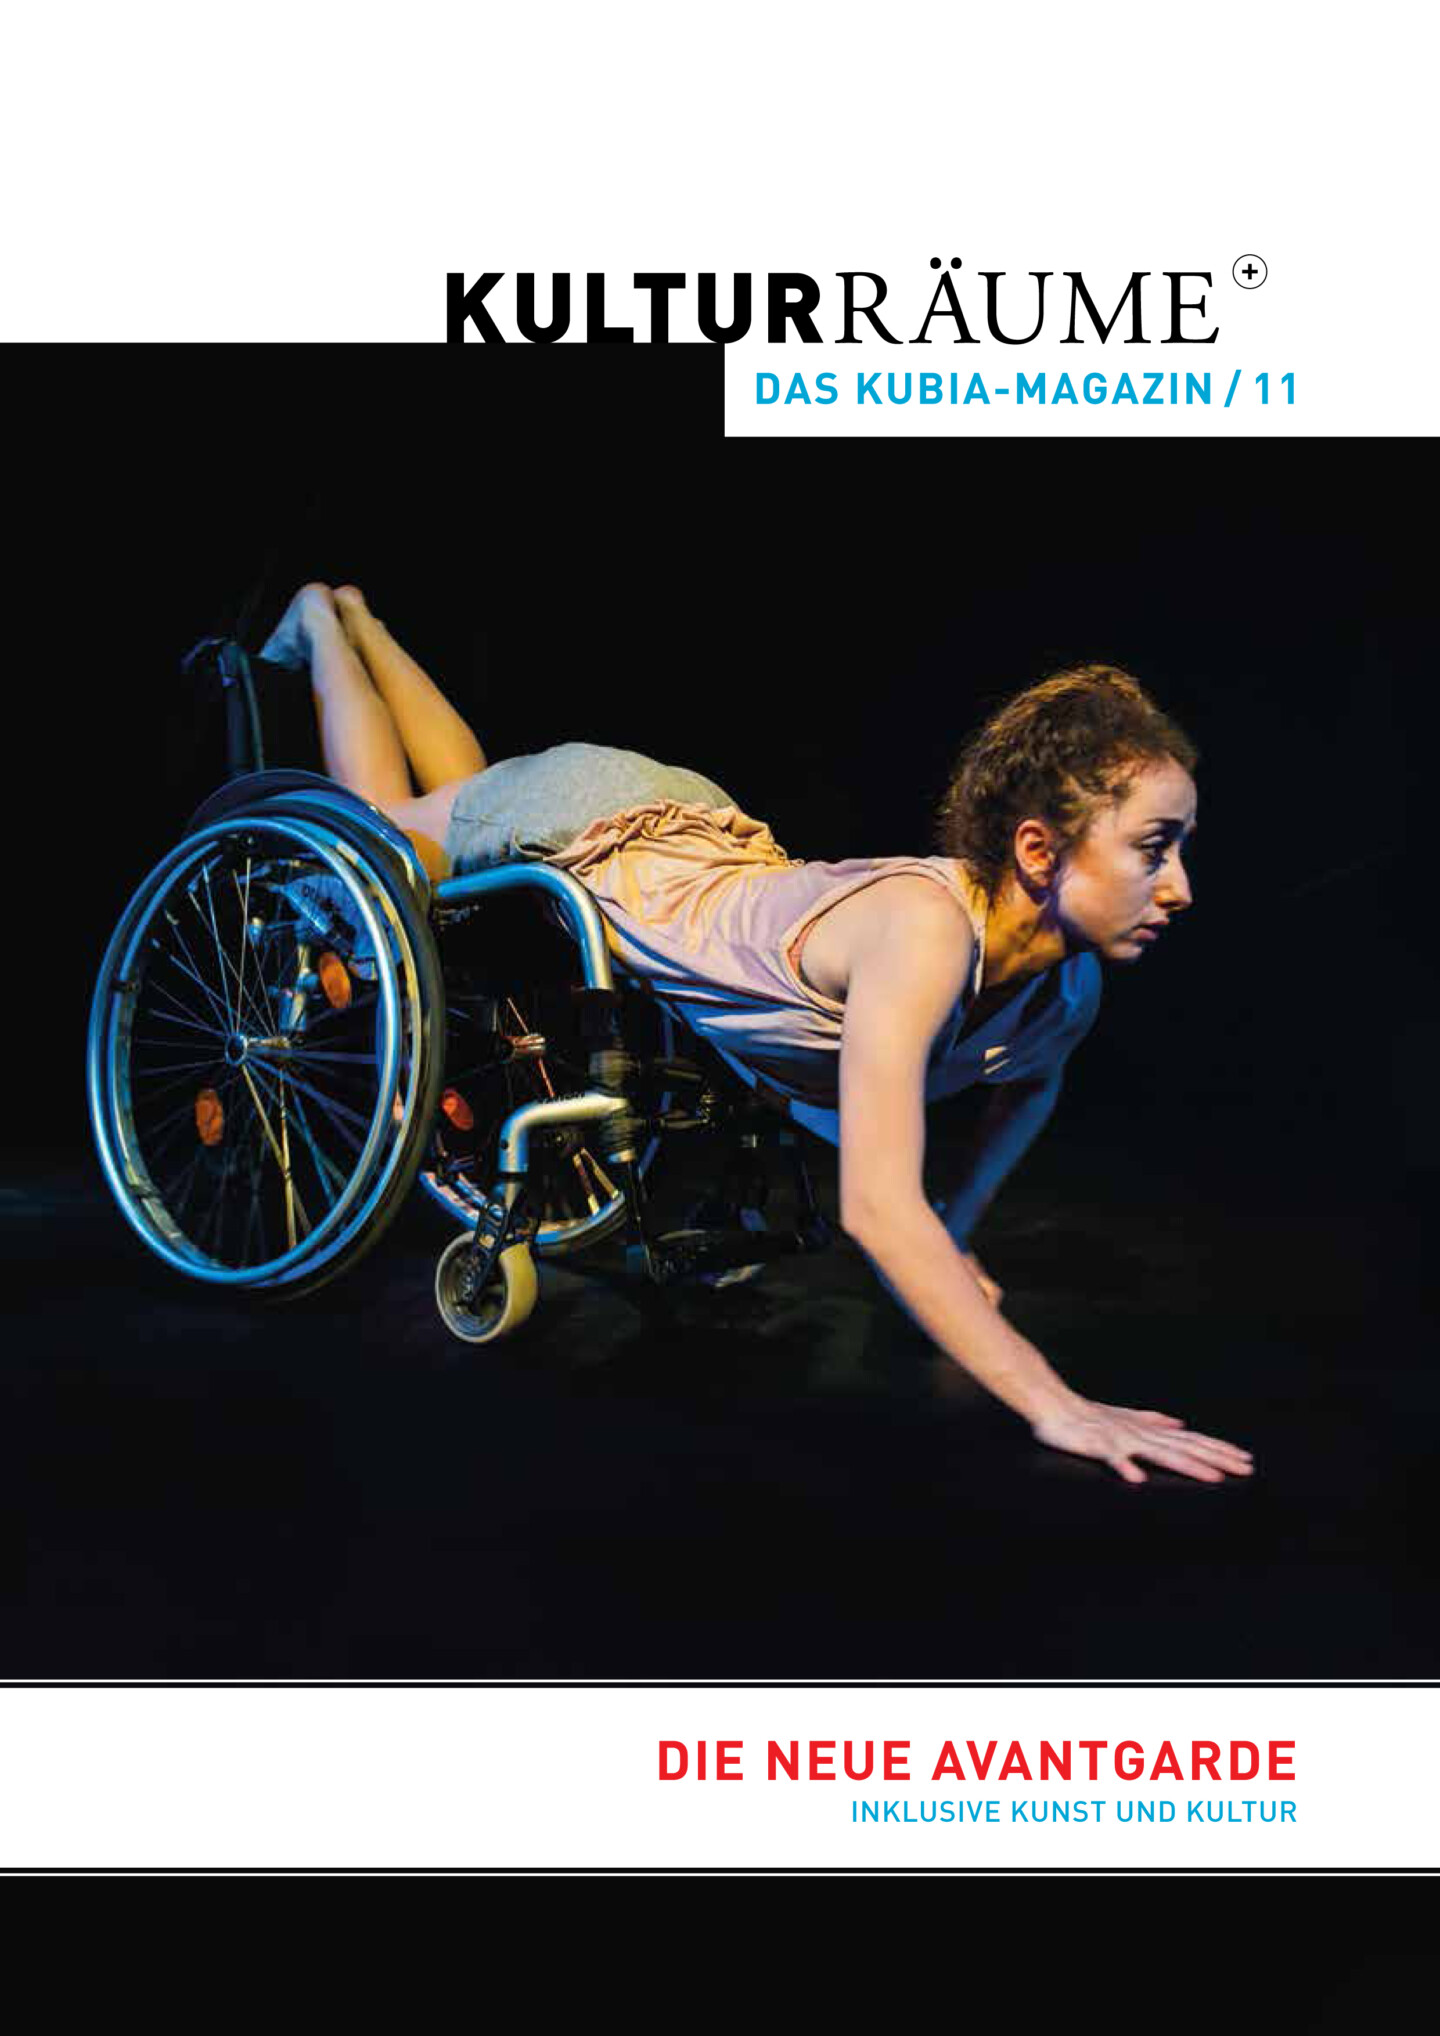 Cover Kulturräume+ 11/2016. Foto von Meyer Originals von der Produktion "L - Do I Need Labels to Love?" von der Un-Label Performing Arts Company. Tänzerin liegt auf Sportrolli auf der Bühne.